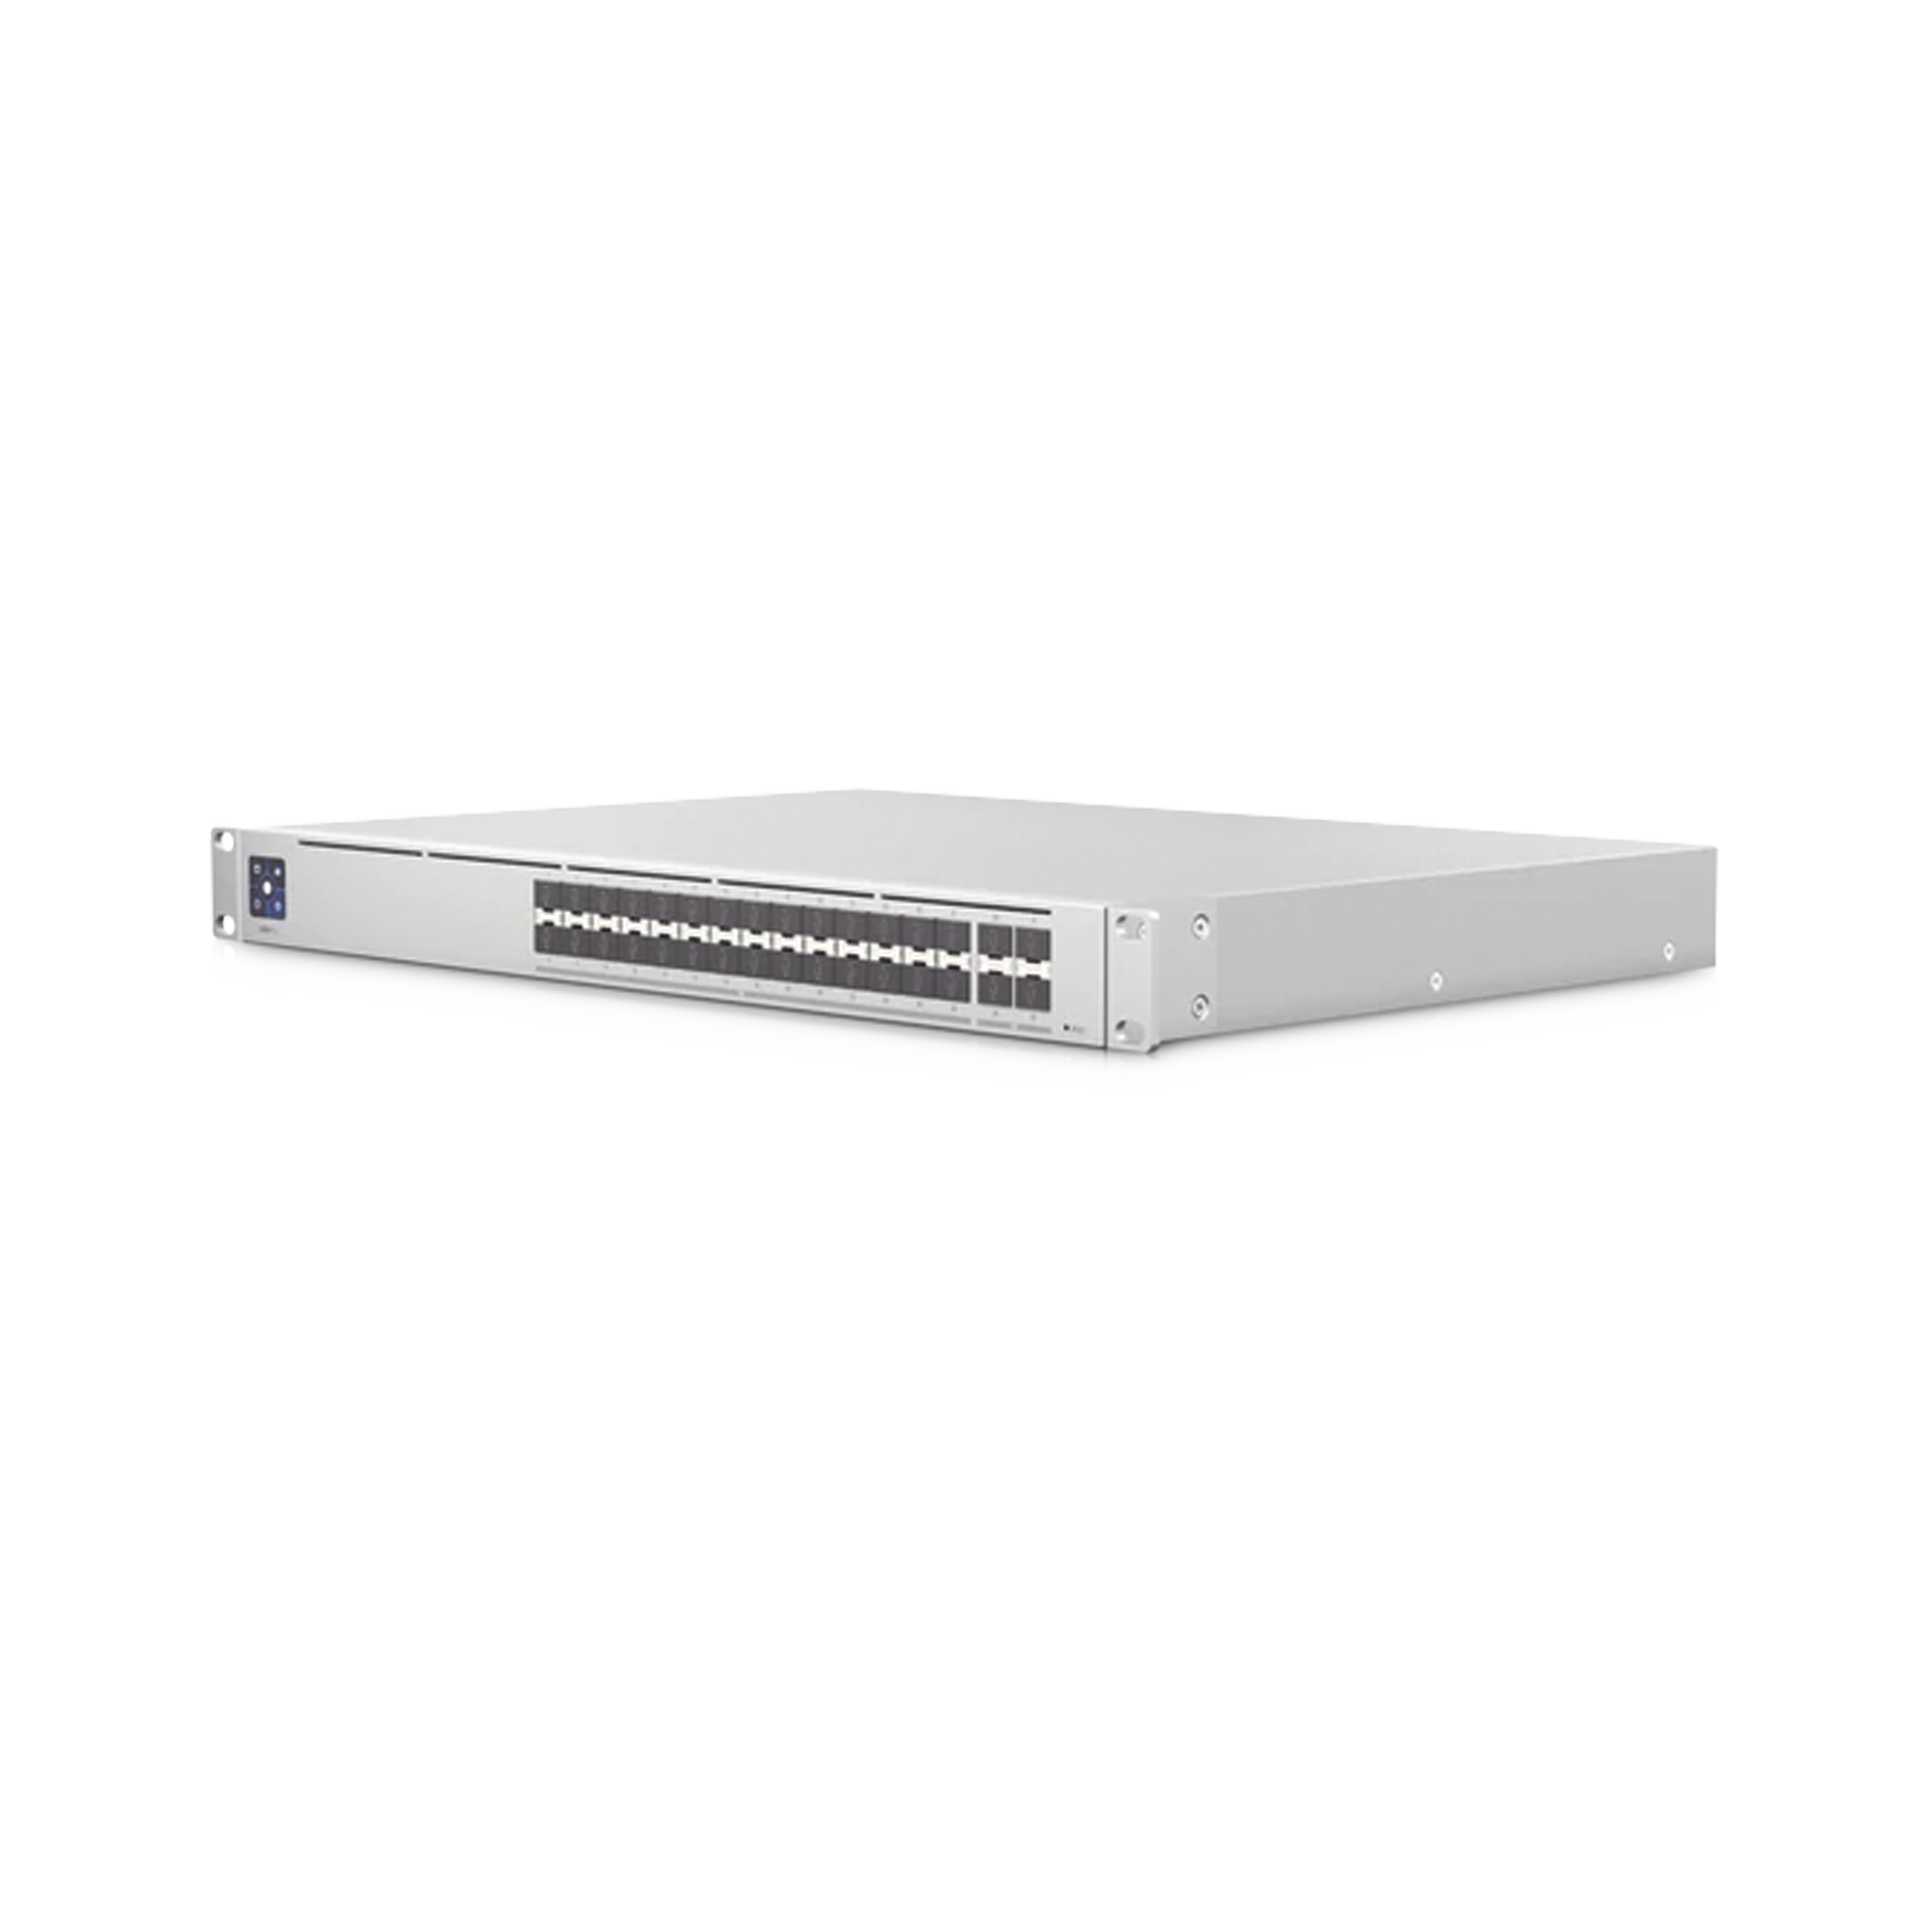 UniFi Switch PRO Aggregation Capa 3 para fibra óptica con 28 puertos SFP+ (10G) y 4 puertos SFP28 (25G), pantalla informativa